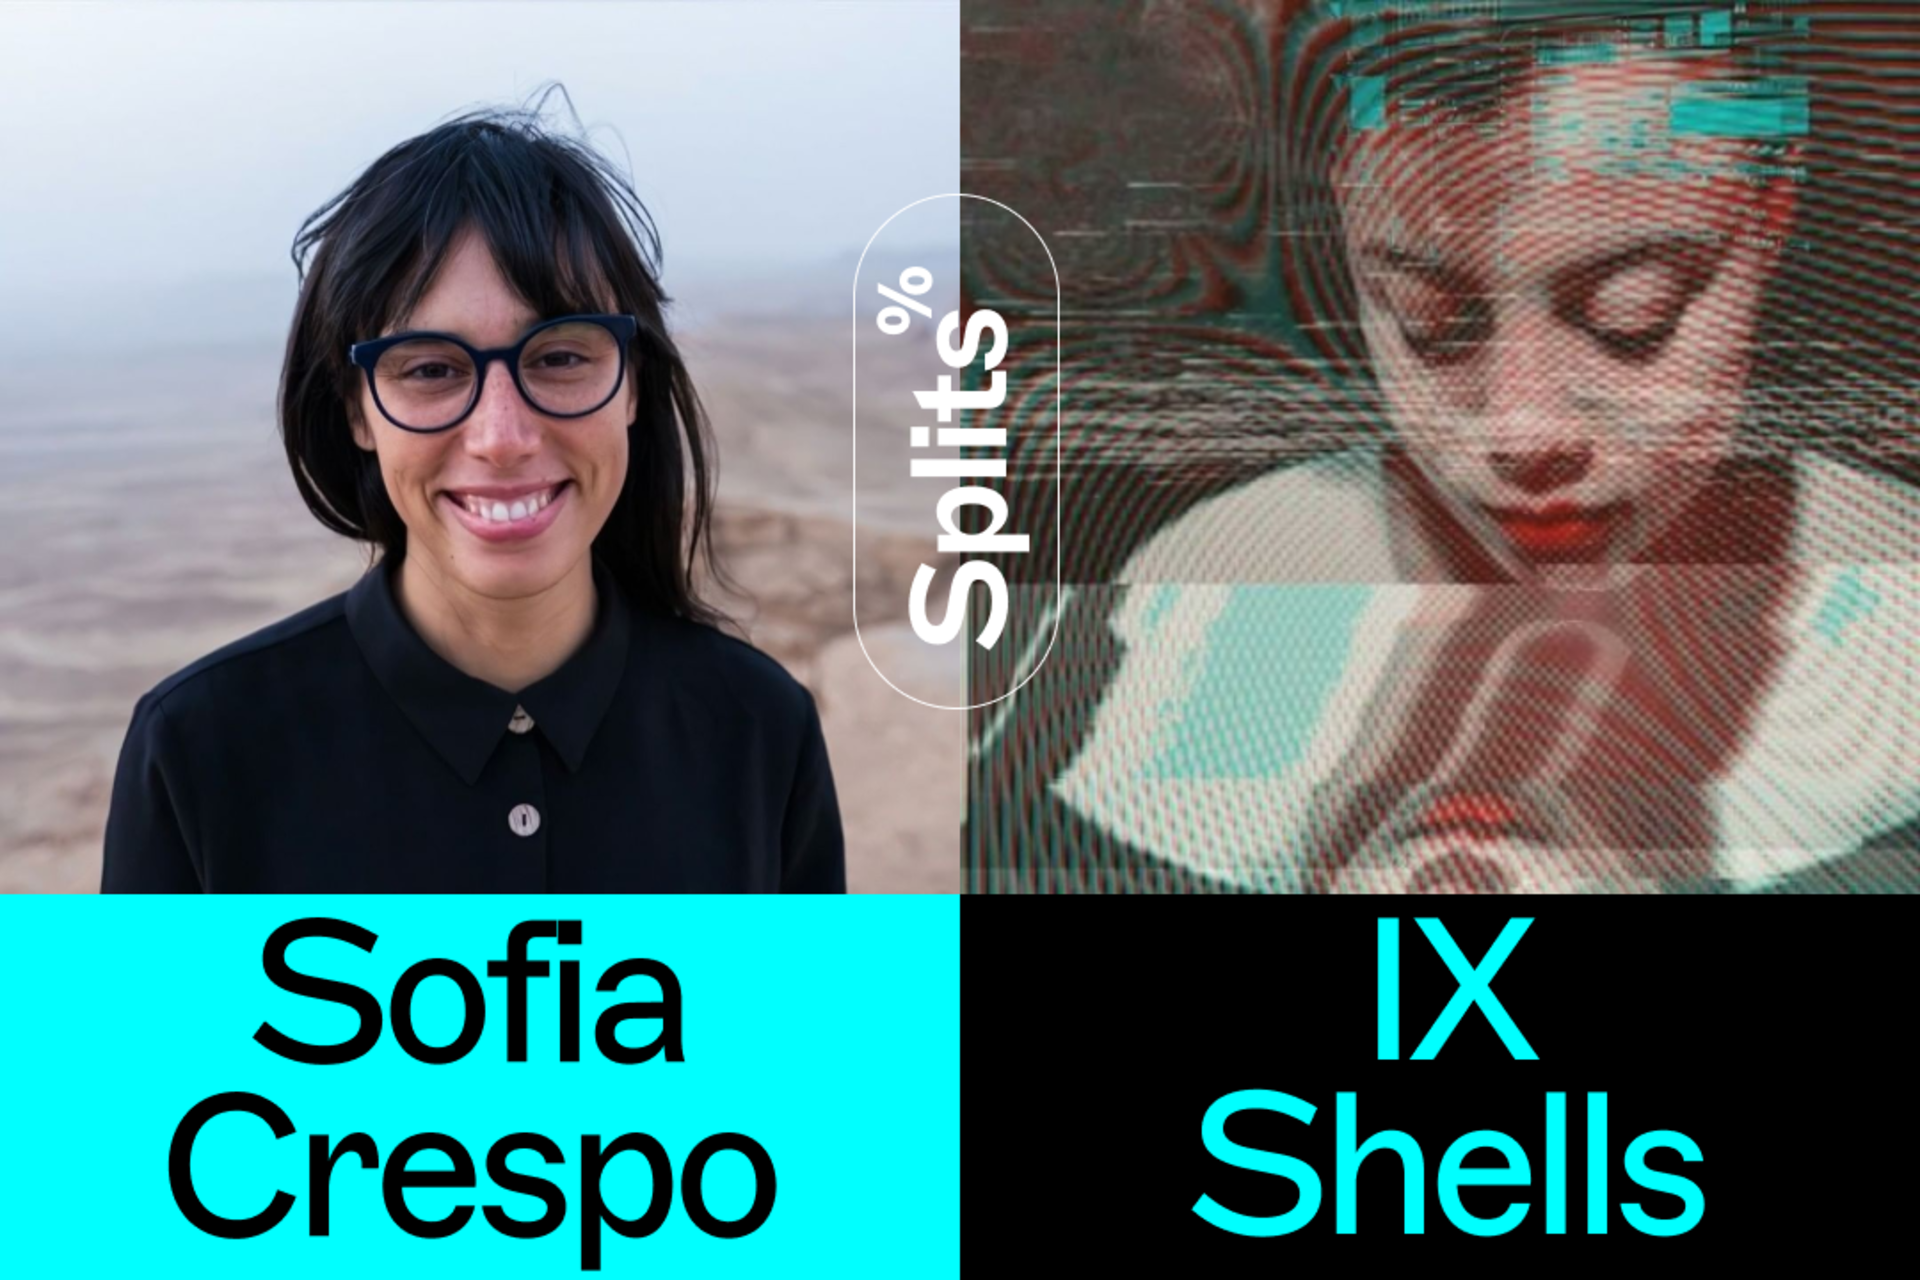 IX Shells Splits with Sofia Crespo